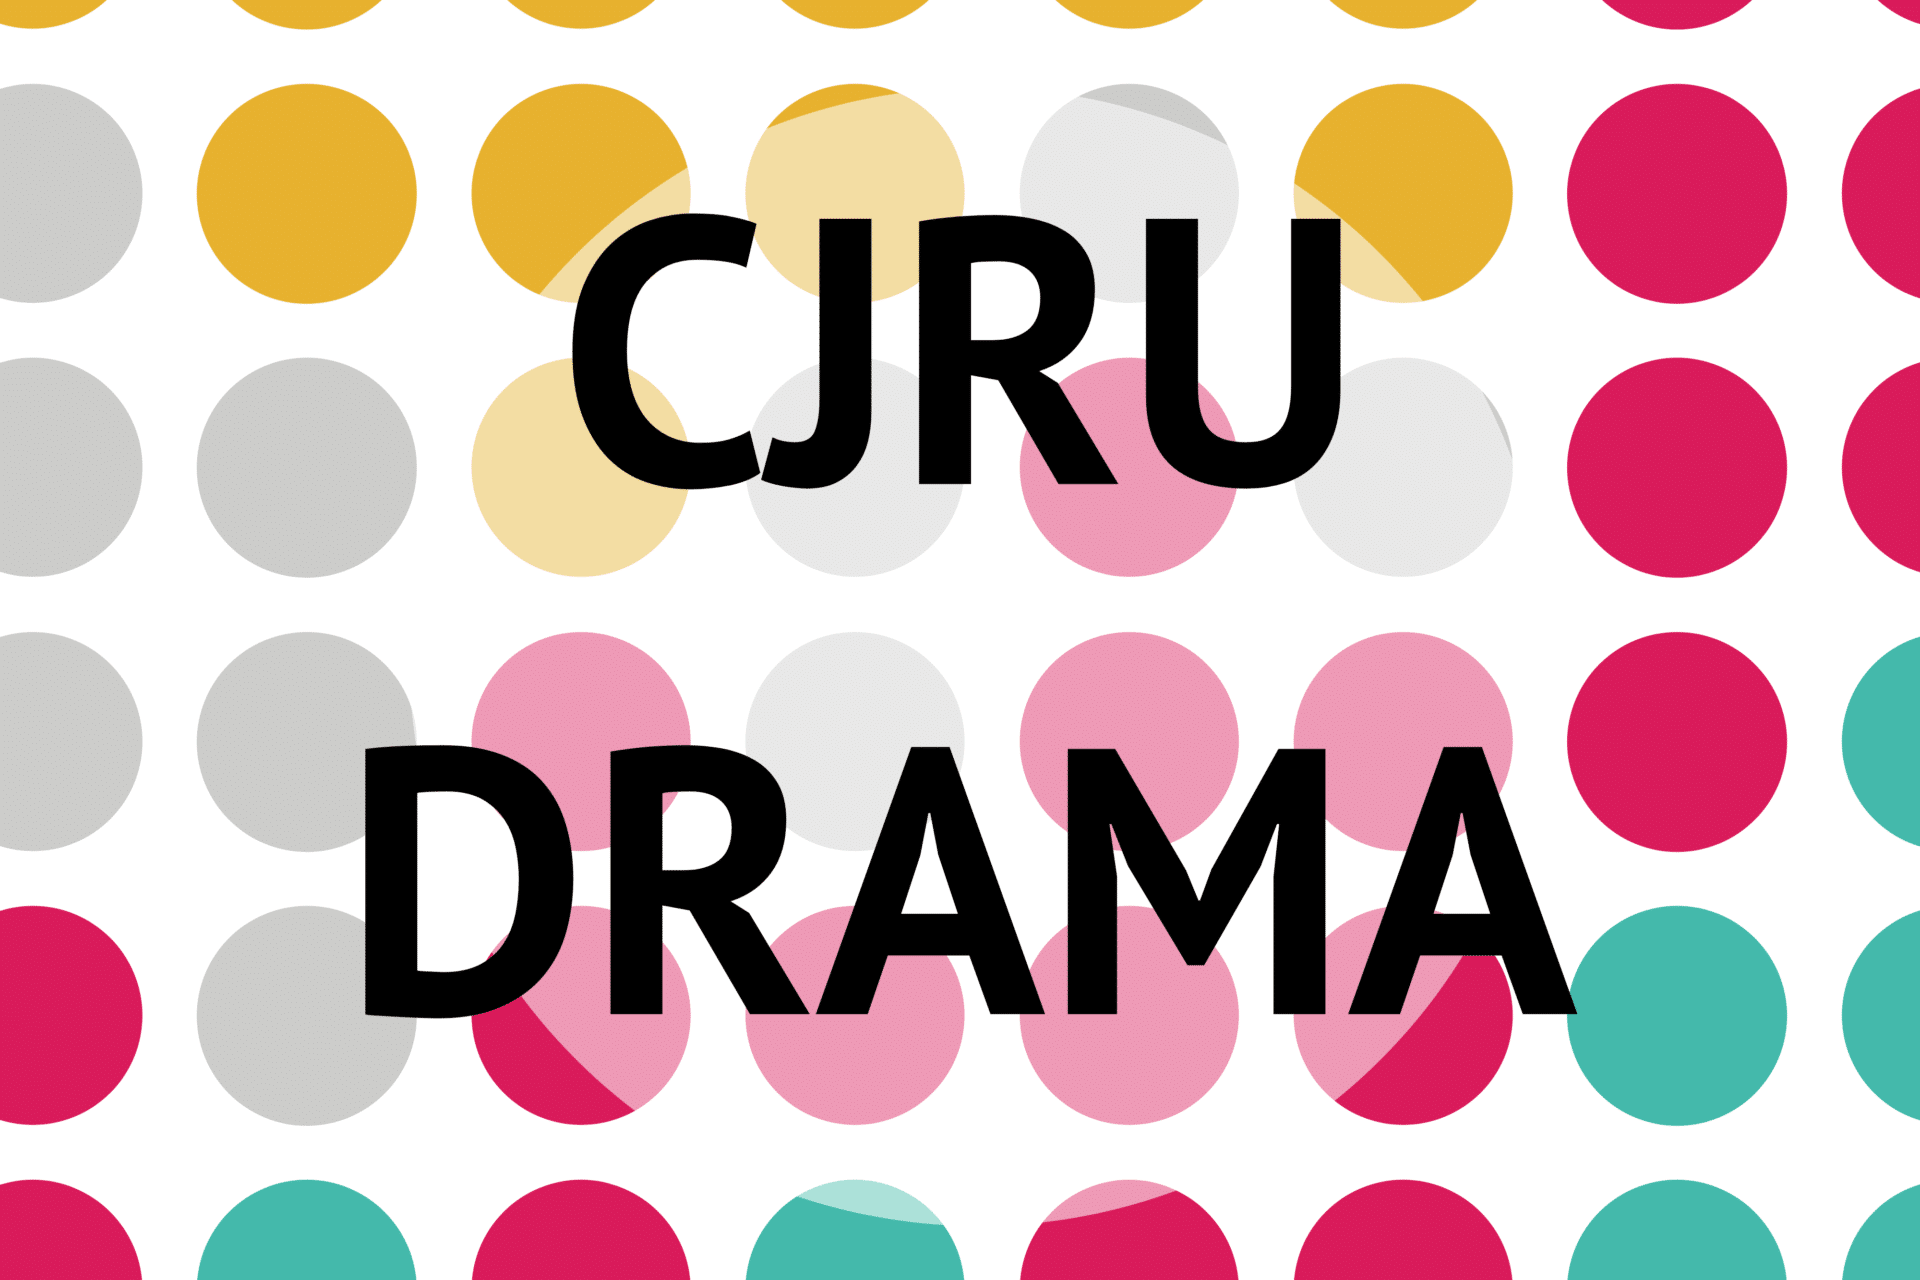 CJRU Drama show image